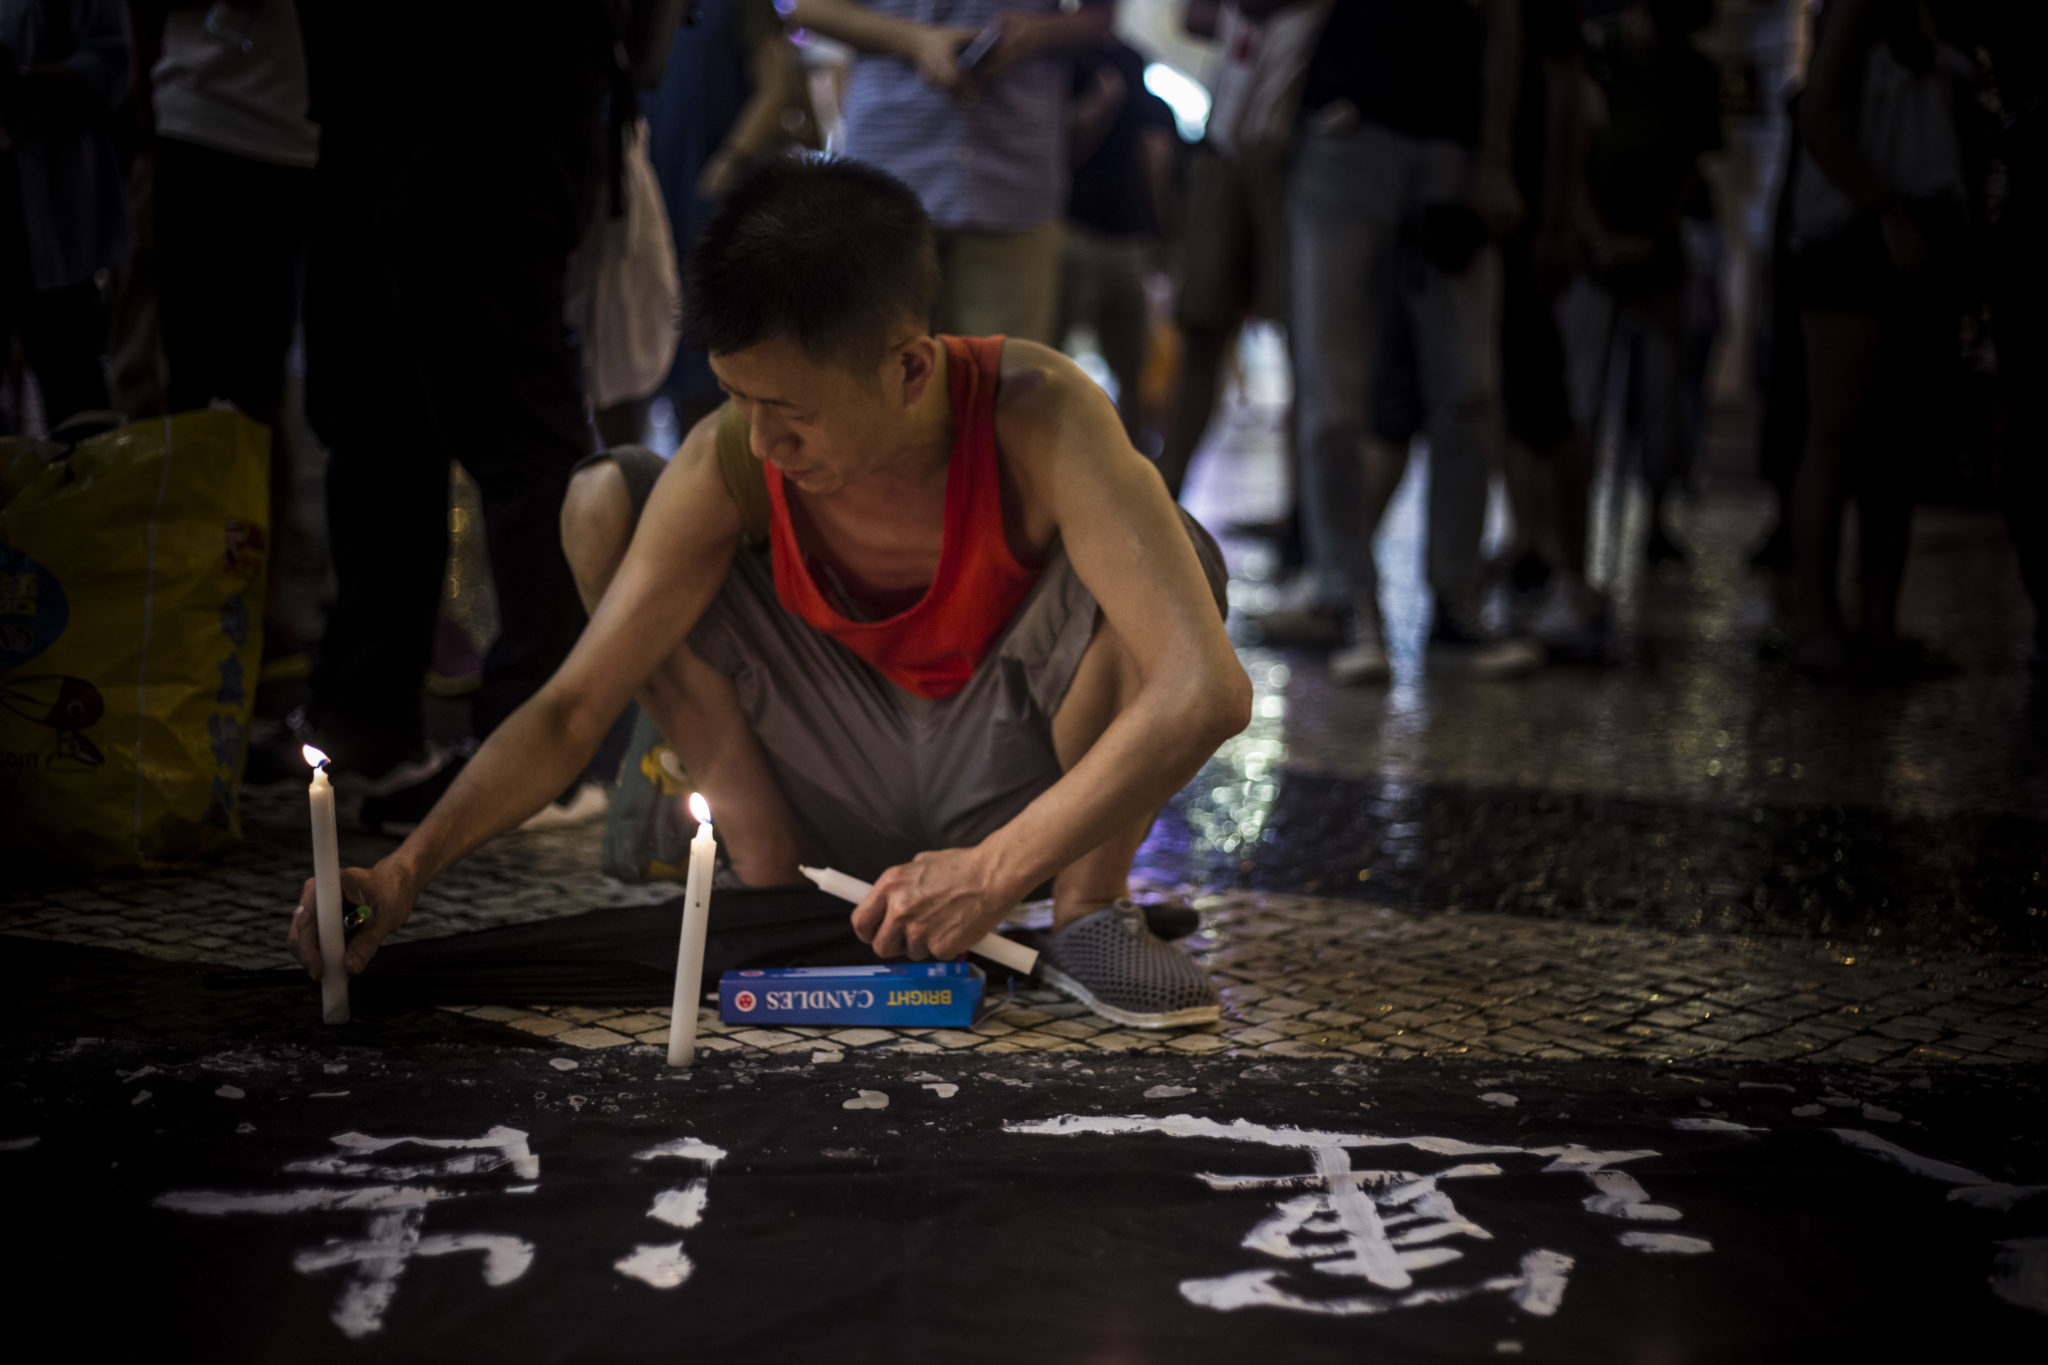 Rejeitada motivação política na proibição de exposição sobre Tiananmen